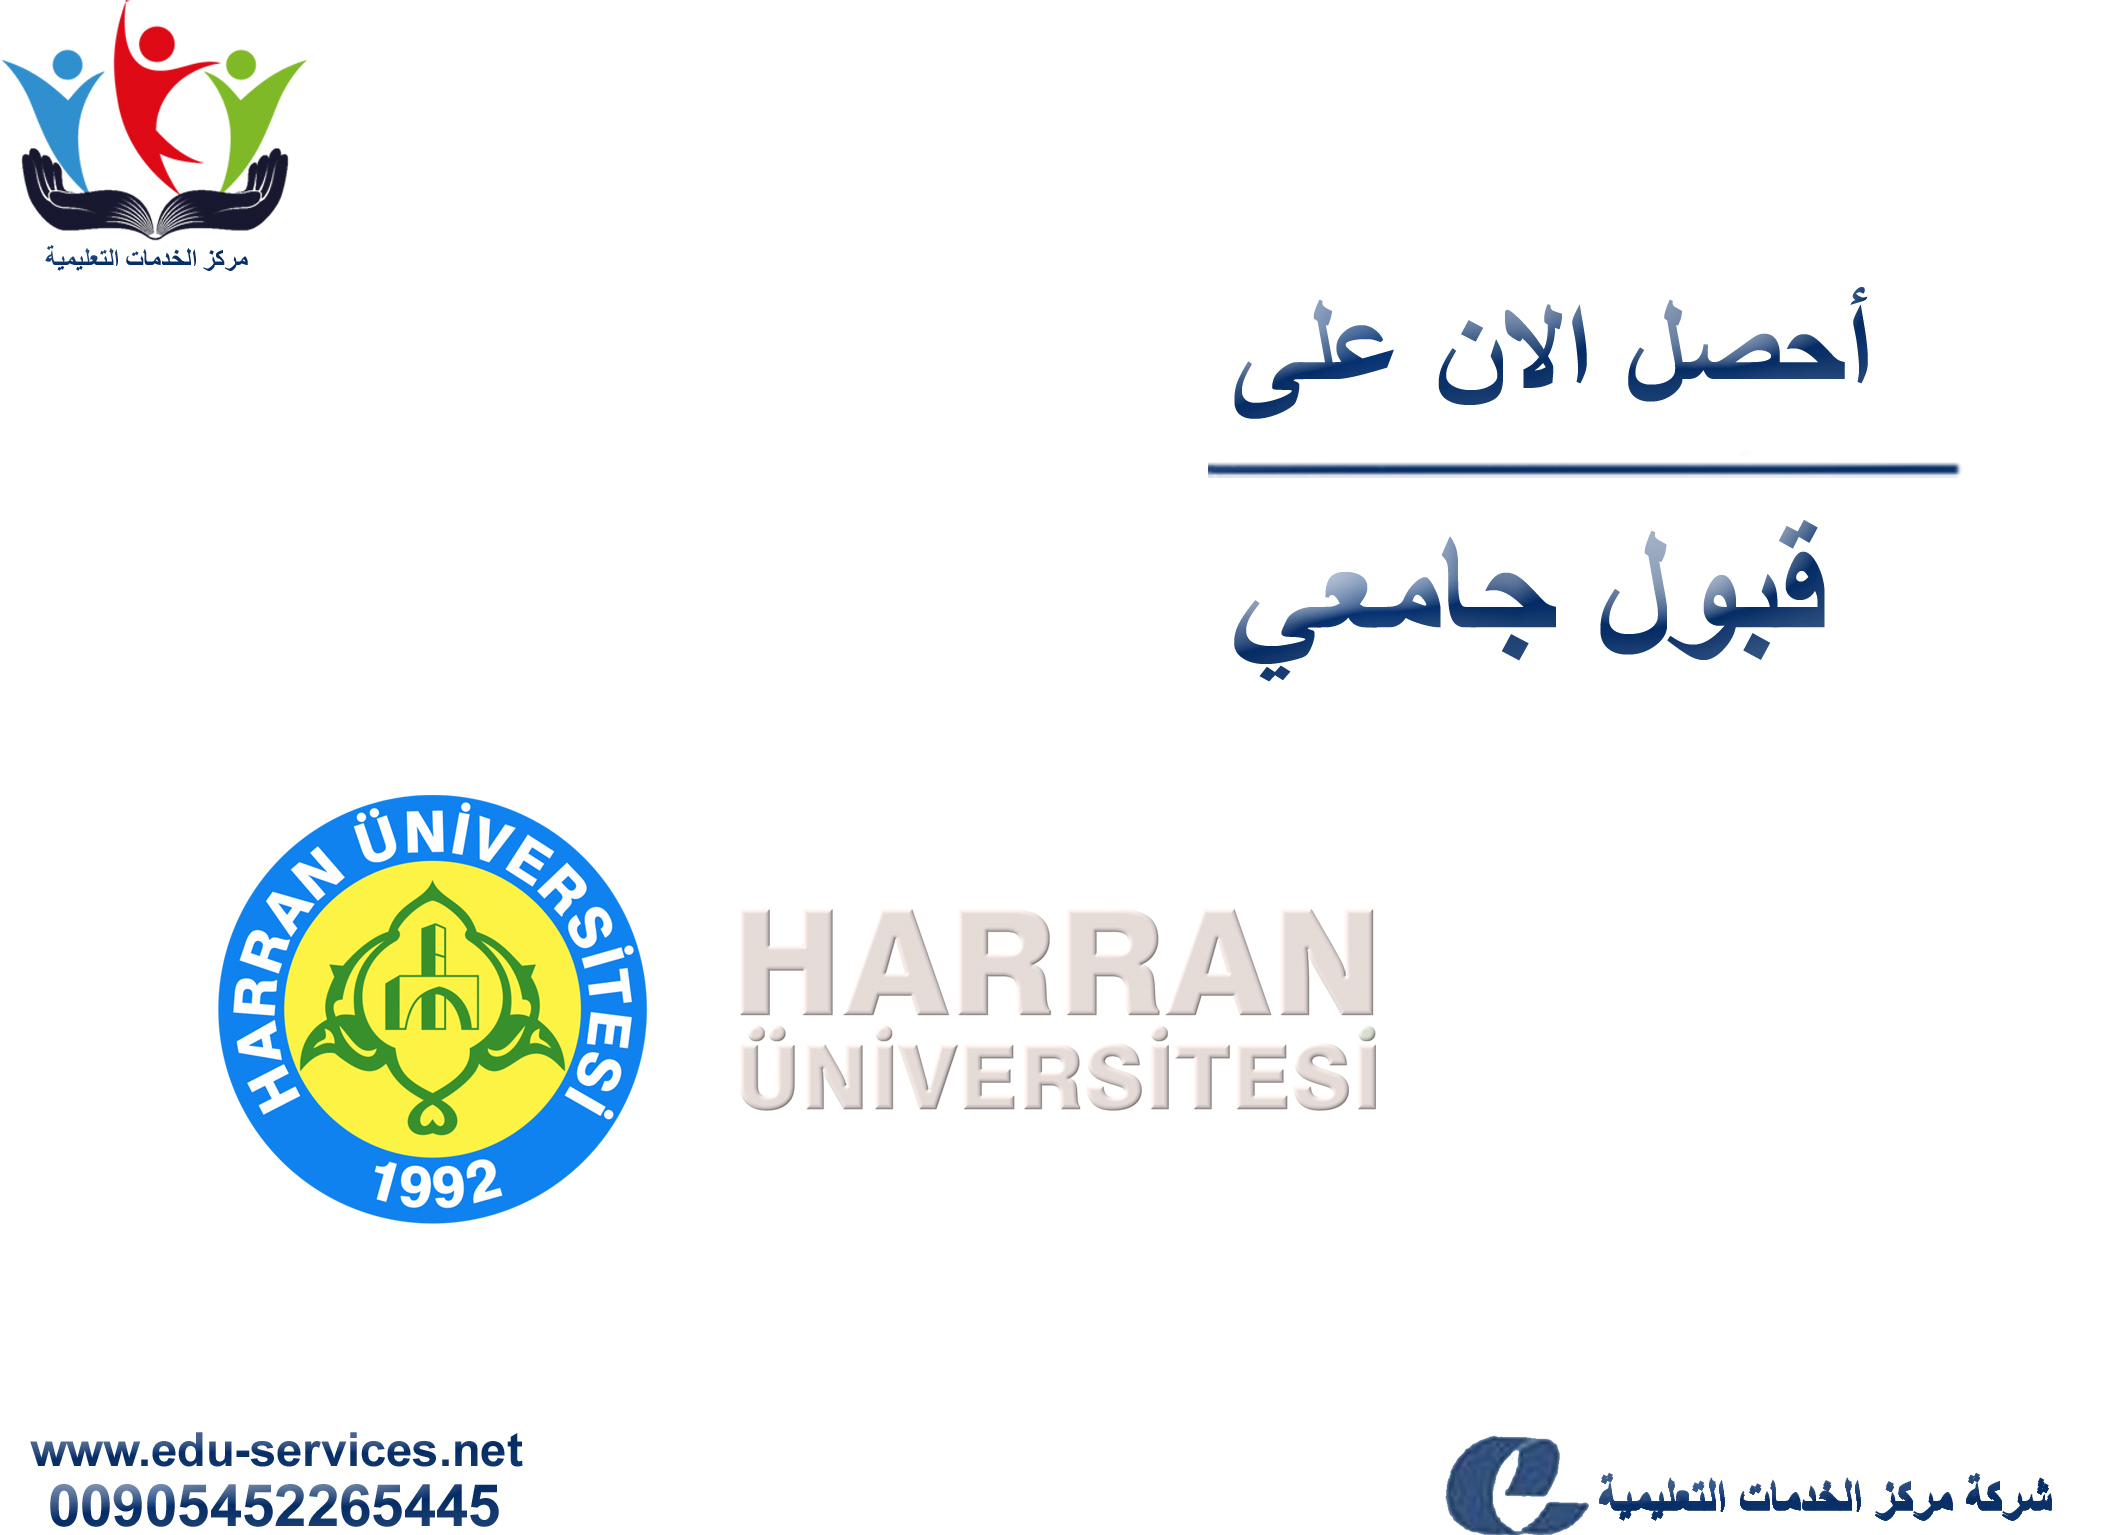 جامعة حران Harran Üniversitesi